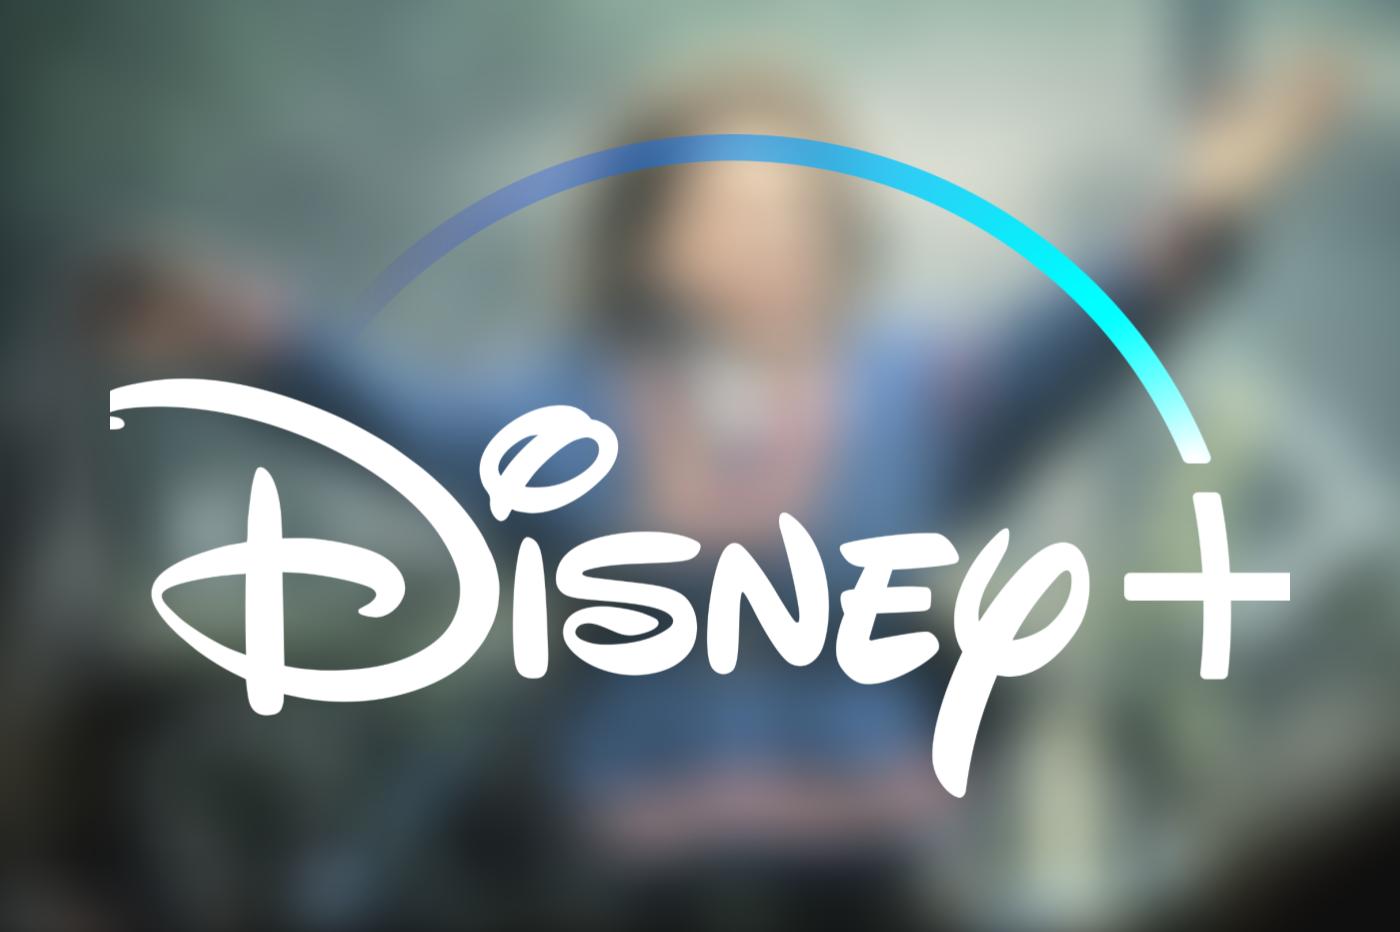 image du film Willow original flouté en fond avec le logo Disney+ devant